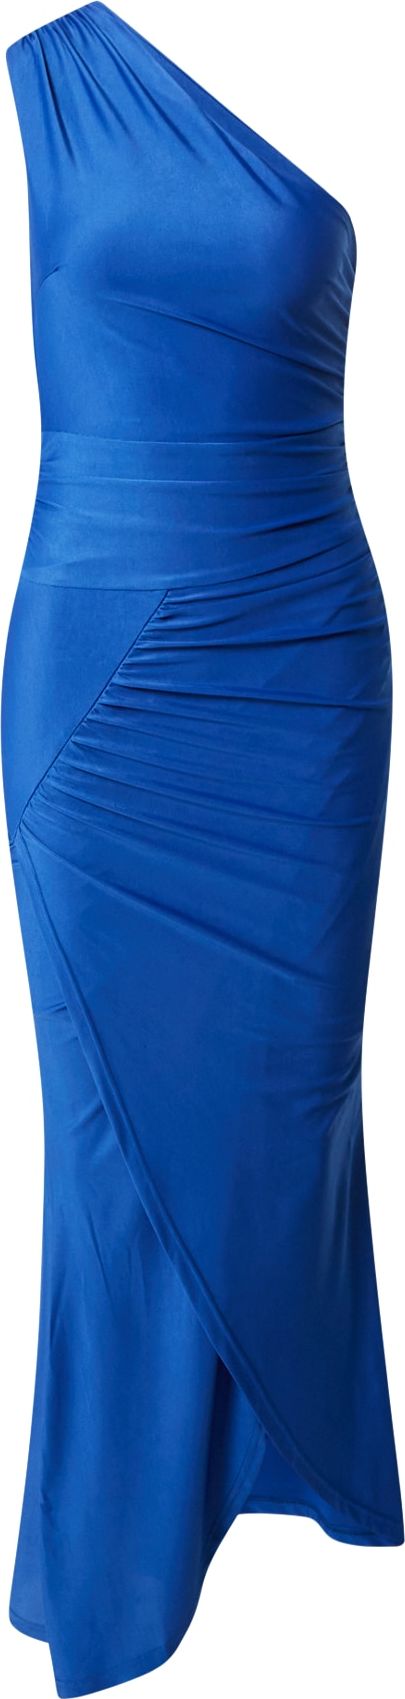 Skirt & Stiletto Společenské šaty 'CHLOE' královská modrá